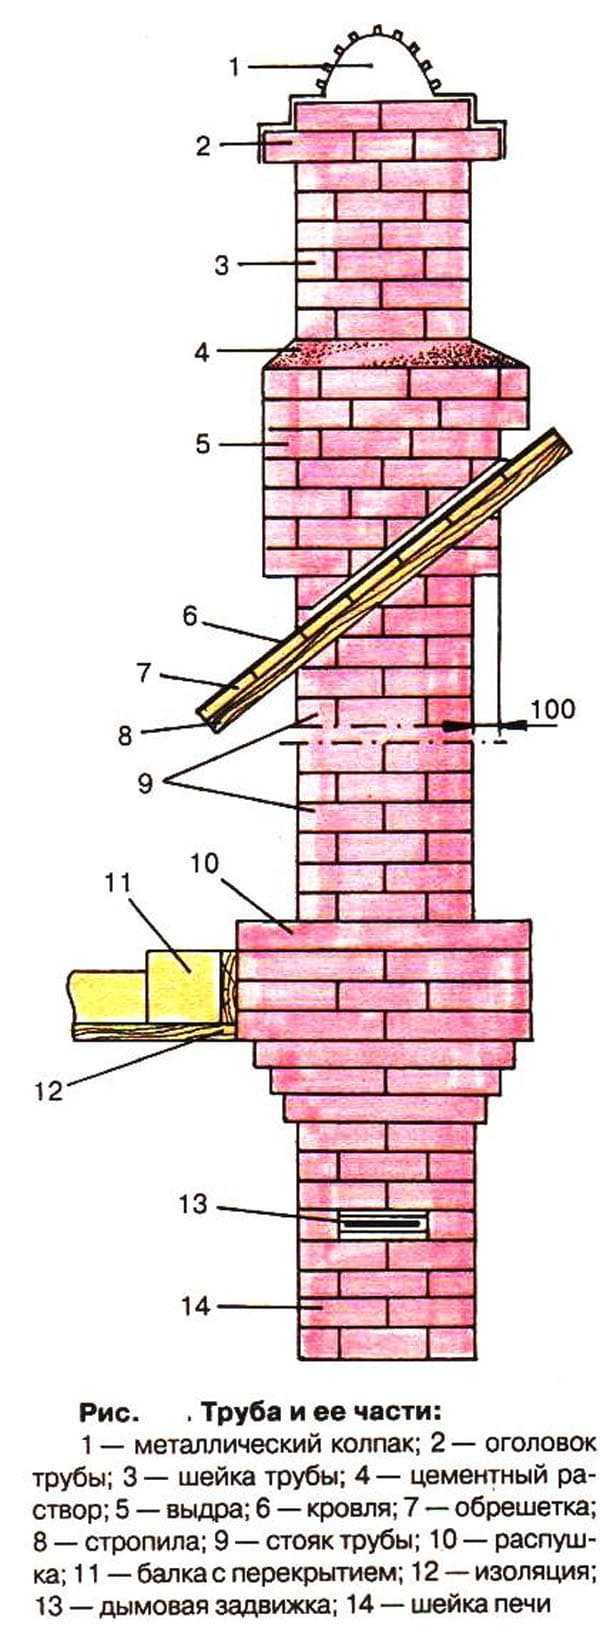 Как правильно построить кирпичный дымоход для камина - блог о строительстве